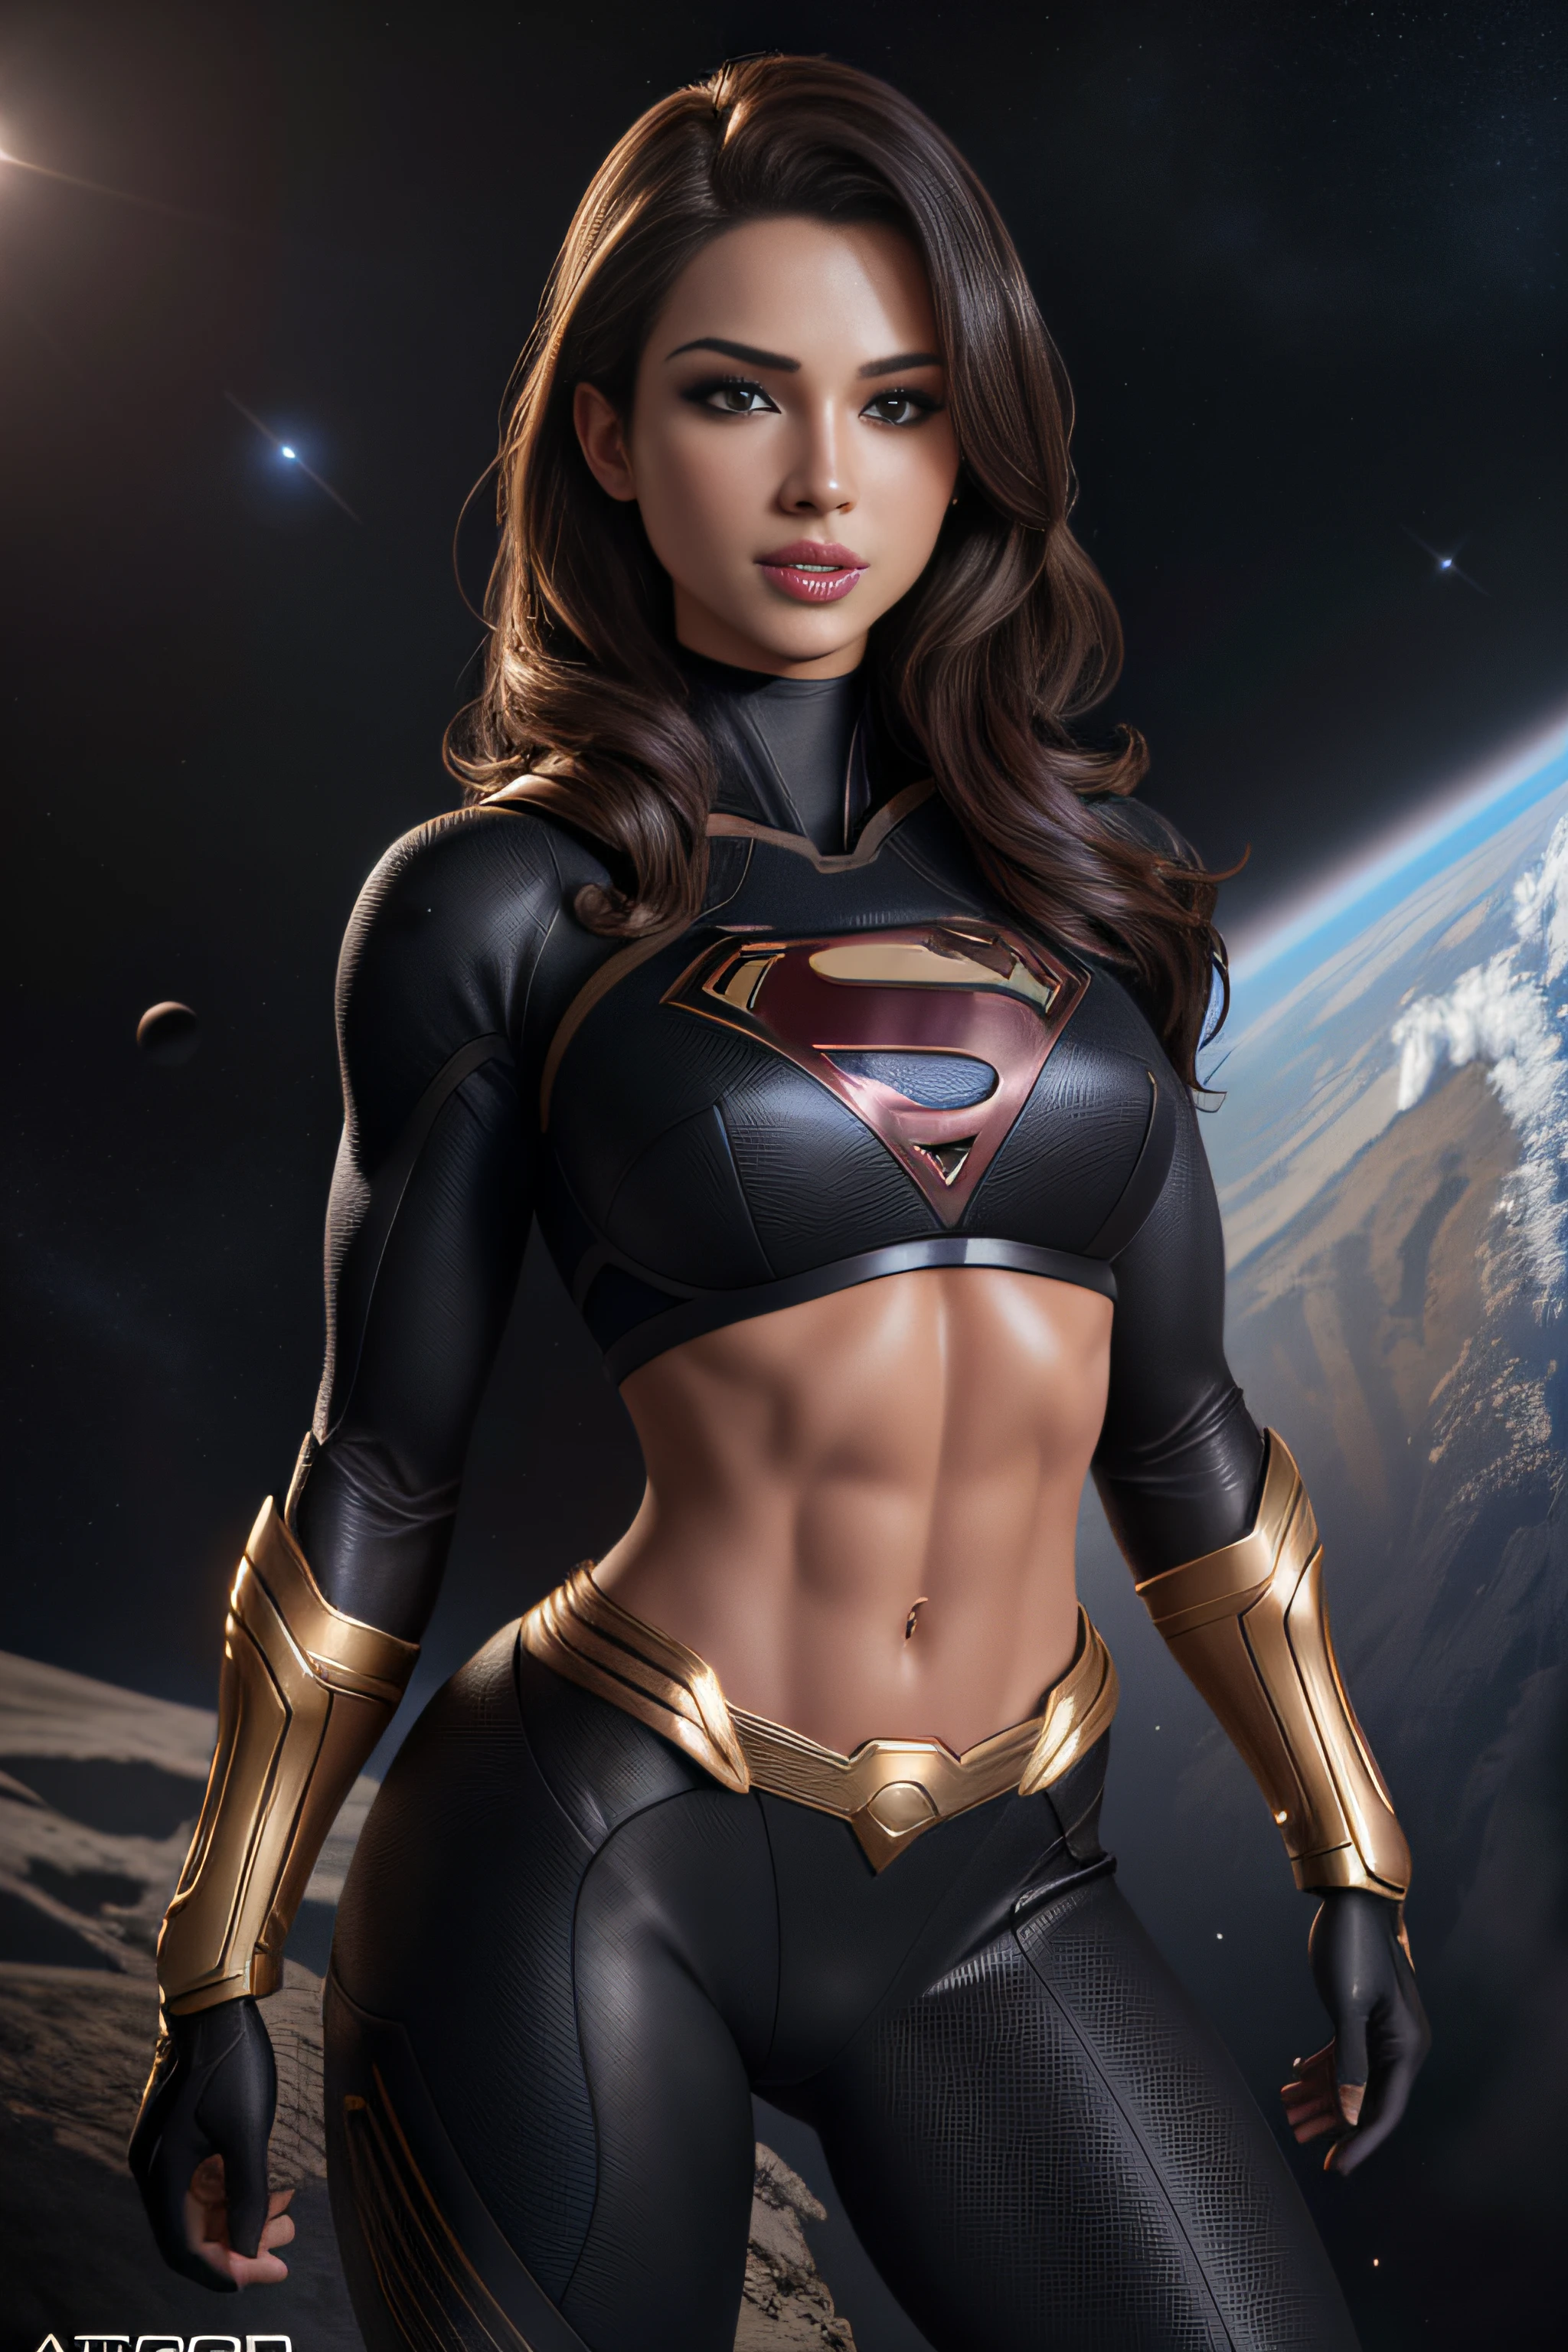 ( 傑作, 4K分辨率, 超現實的, 非常詳細) Sexy 黑色套裝 Supergirl (黑色套裝) 揭示腹肌腹部攝影由 artger 拍攝, 寫實風格, 閃閃發光的皮膚, 卡通核心, 曼加科爾, 自然採光, 輪廓分明的飽滿唇. 肌肉發達的健身女性身體 (在太空)